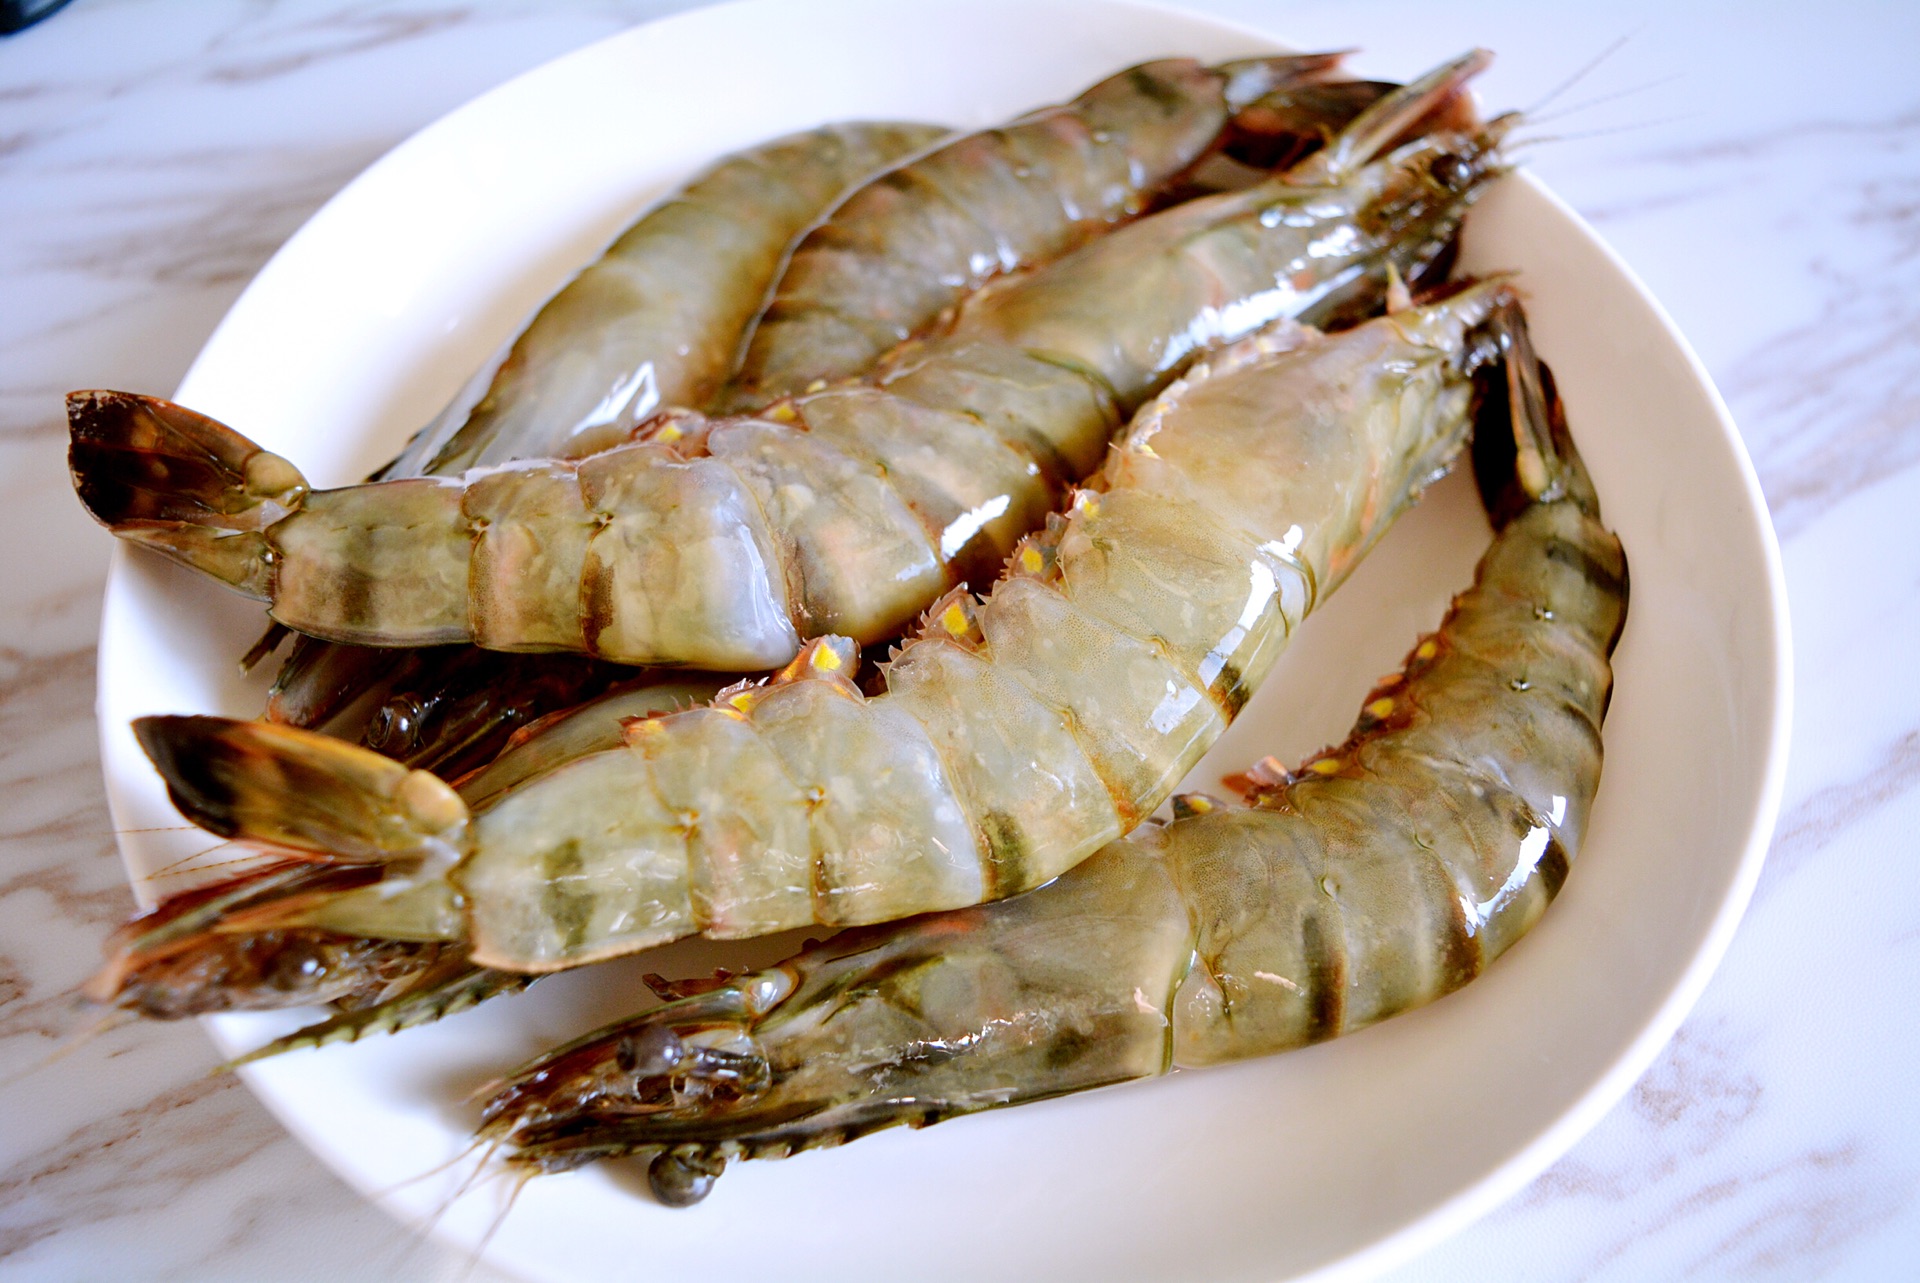 竹节虾的做法,竹节虾的形态特征,竹节虾的药理功效,竹节虾的生活习性_齐家网